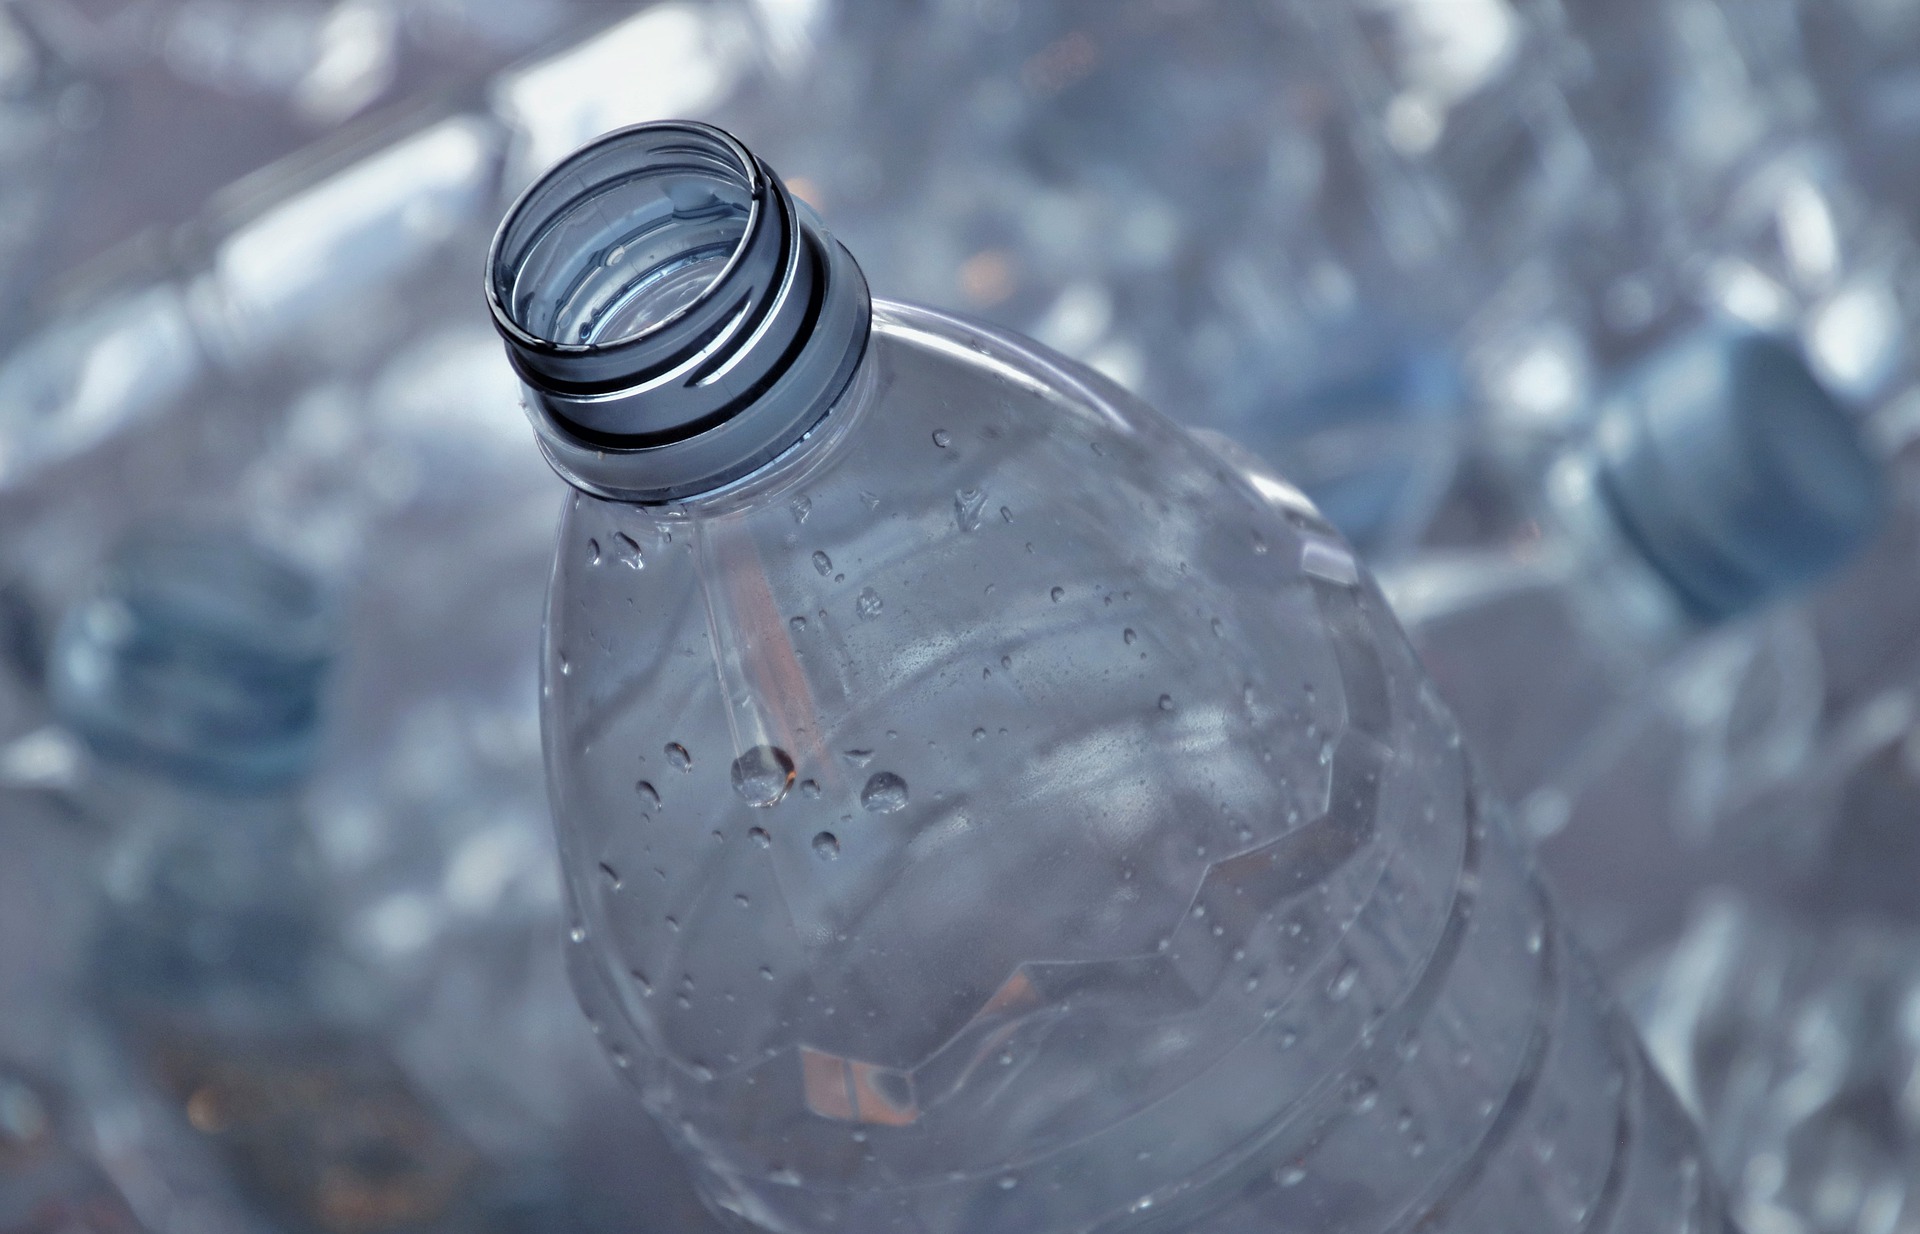 Lidl crea la primera botella de agua r-Pet y marca propia con la que ahorrará 185 toneladas de plásticos anuales.